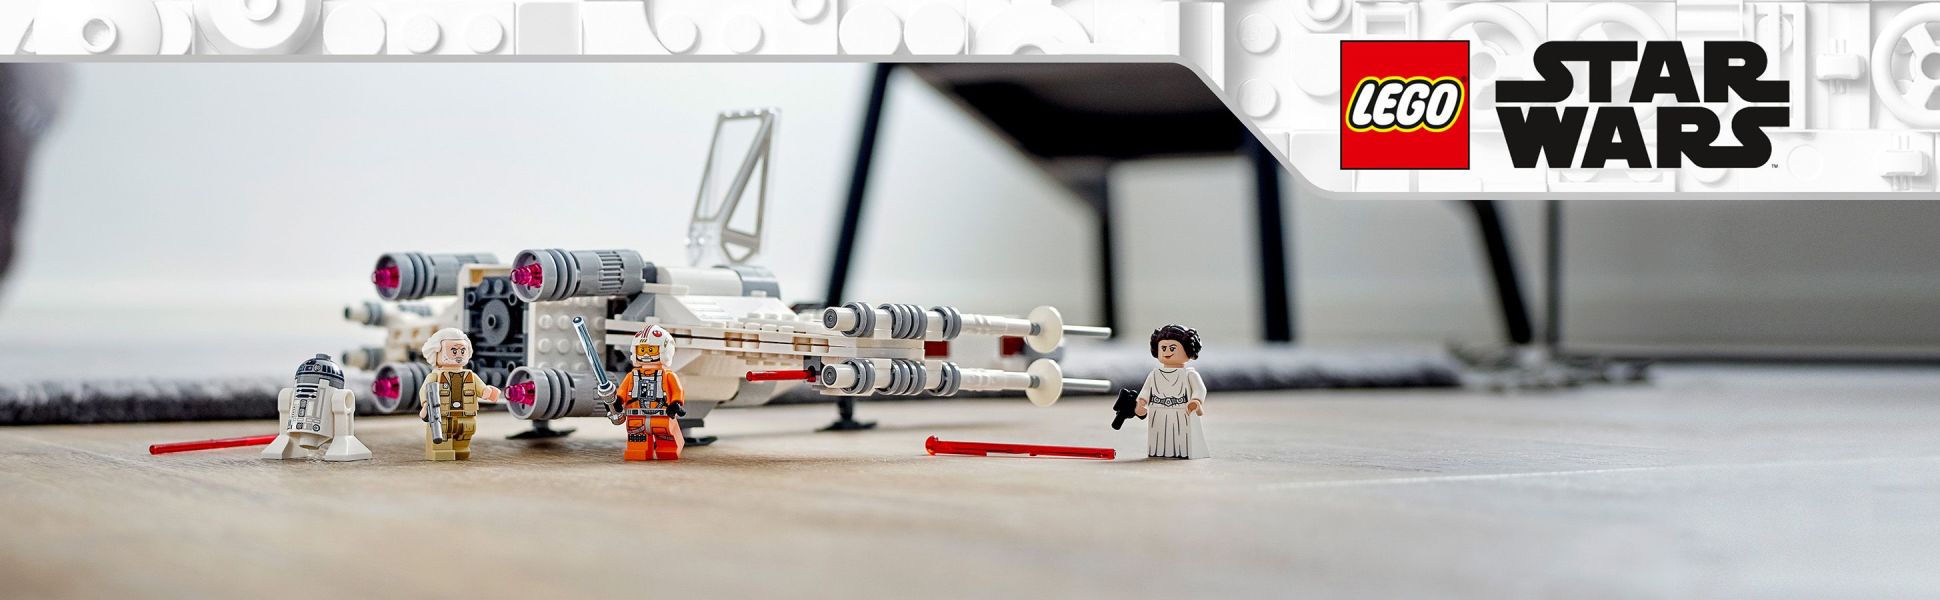 LEGO Star Wars 75301 Le X-Wing Fighter de Luke Skywalker, Jouet, Figurines,  Vaisseau Spatial pas cher 